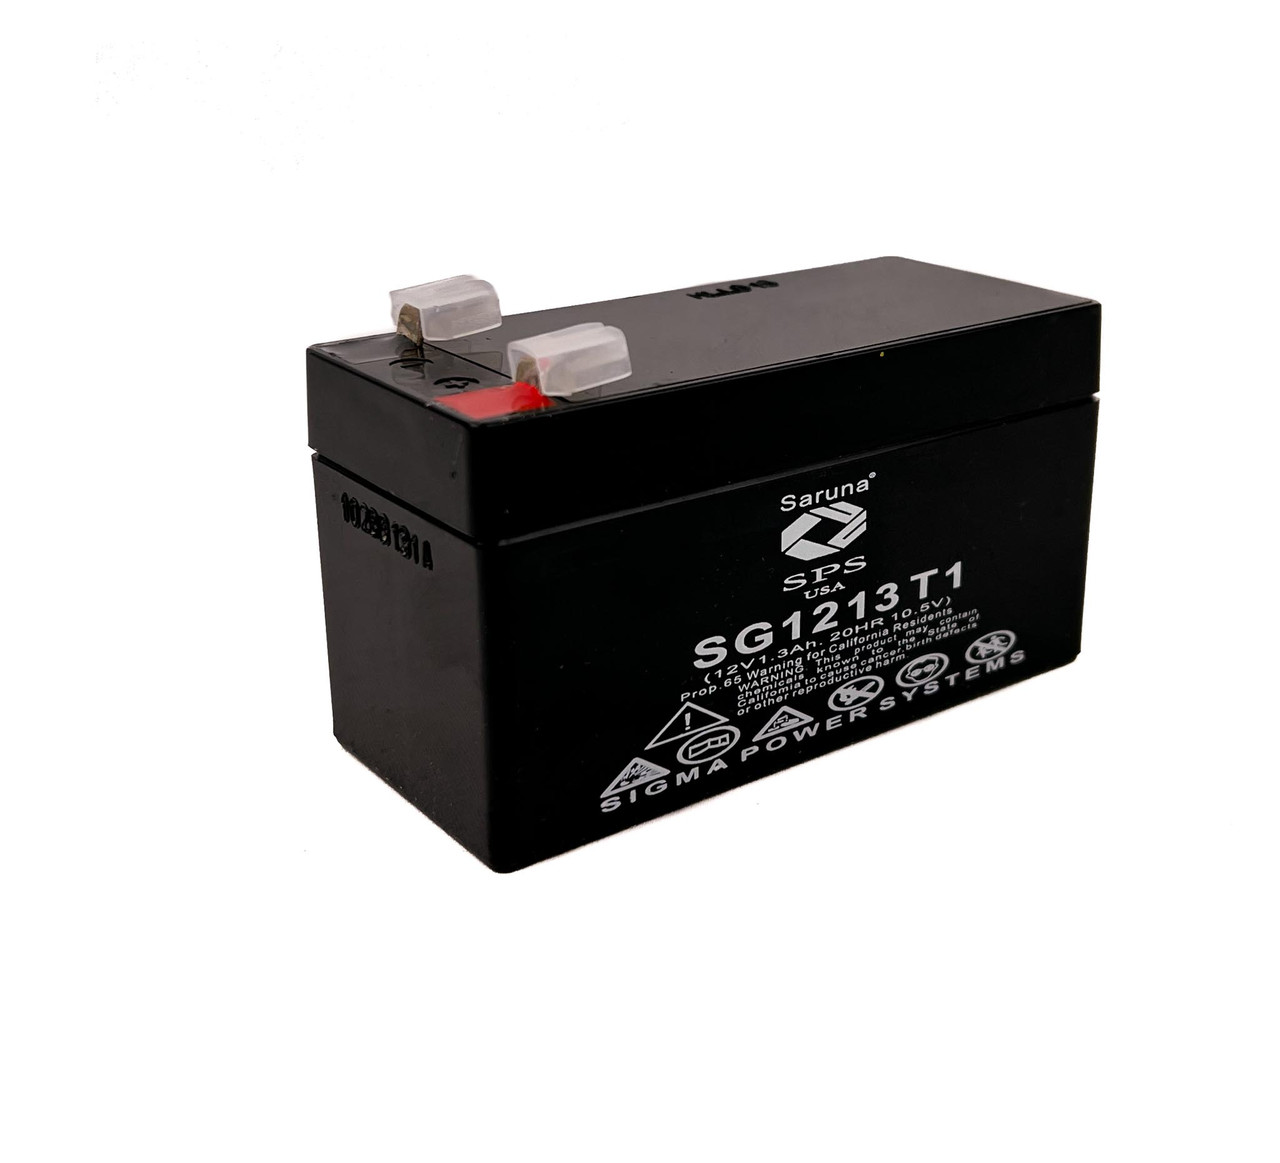 Raion Power 12V 1.3Ah Non-Spillable Replacement Rechargebale Battery for Mortara ELI 50 ECG Recorder